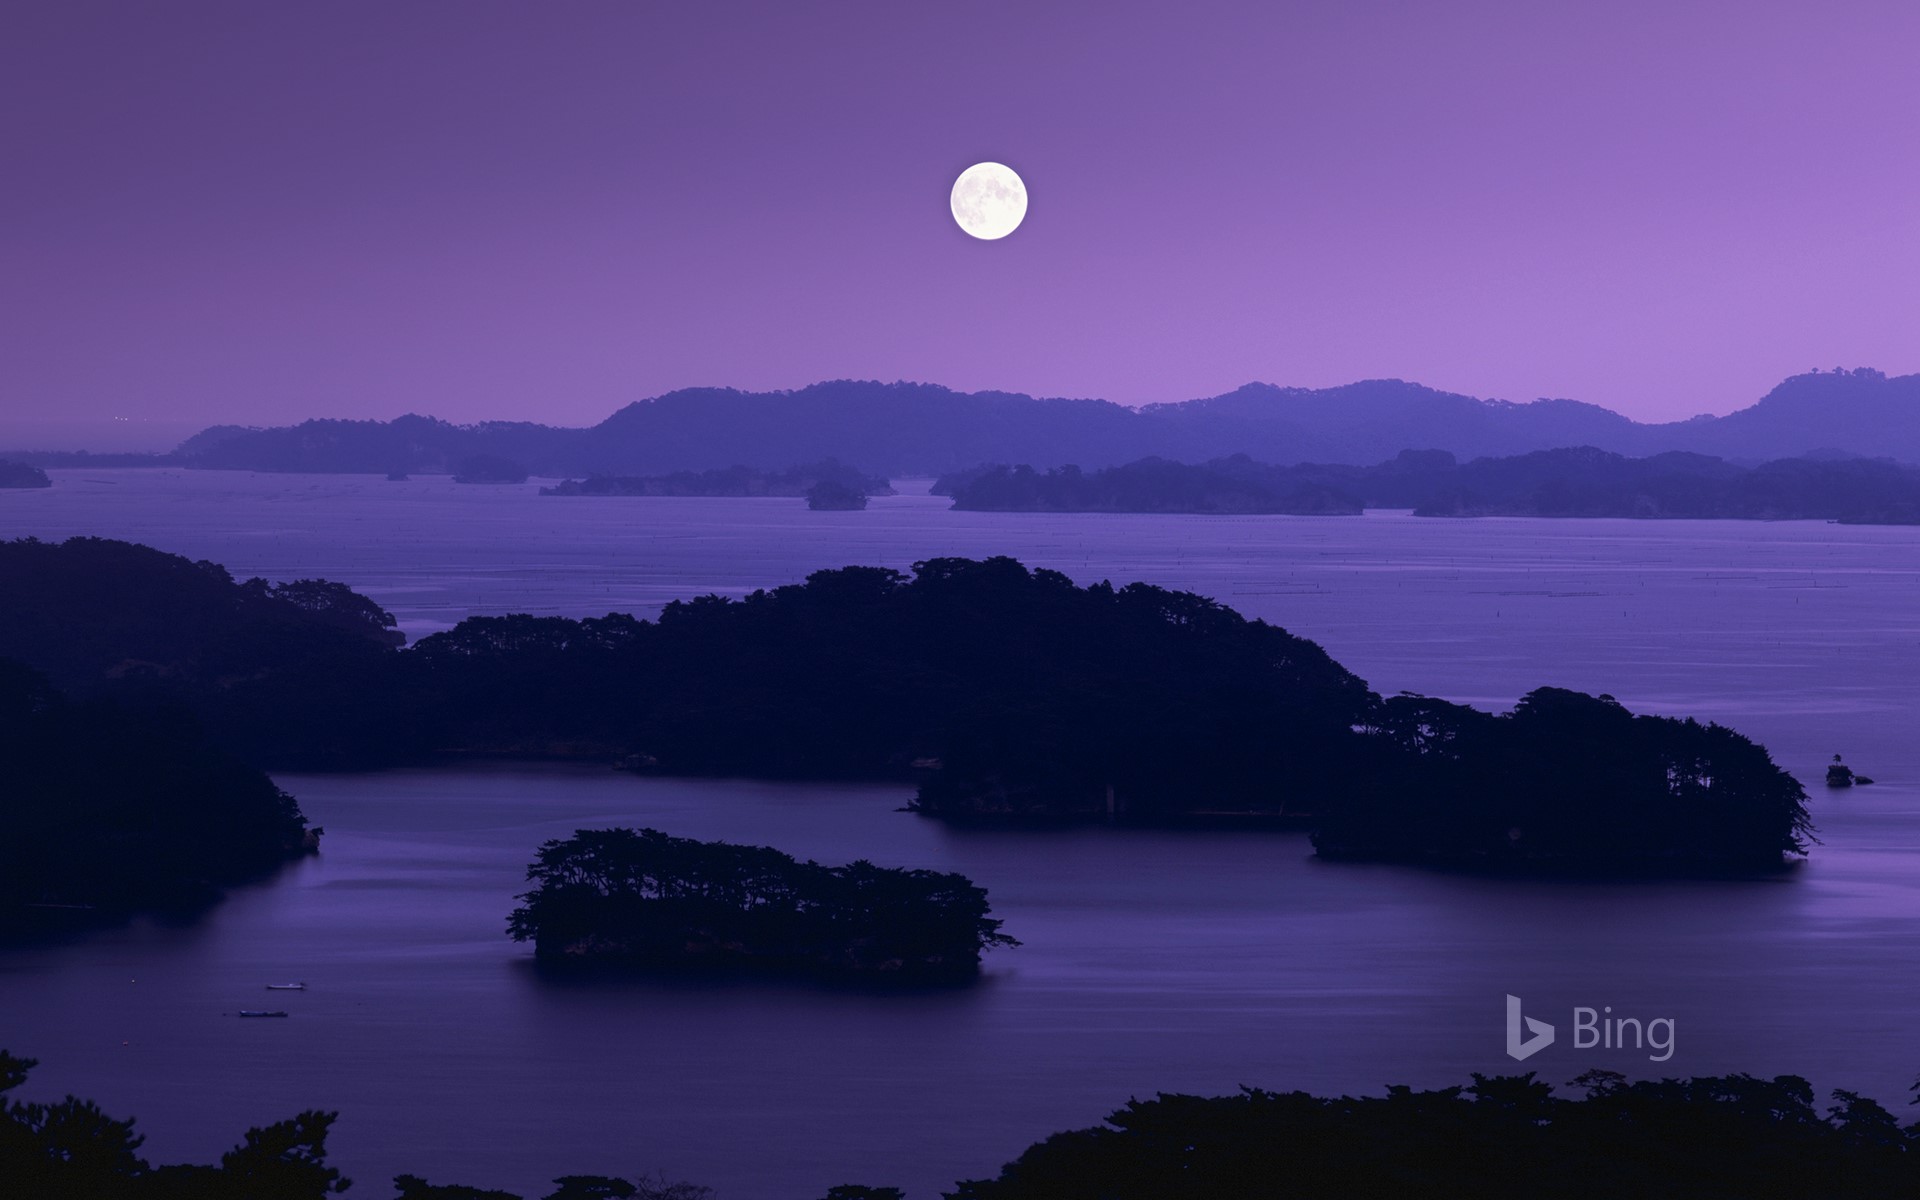 Matsushima Bay at night with full moon, Matsushima town, Miyagi prefecture, Japan